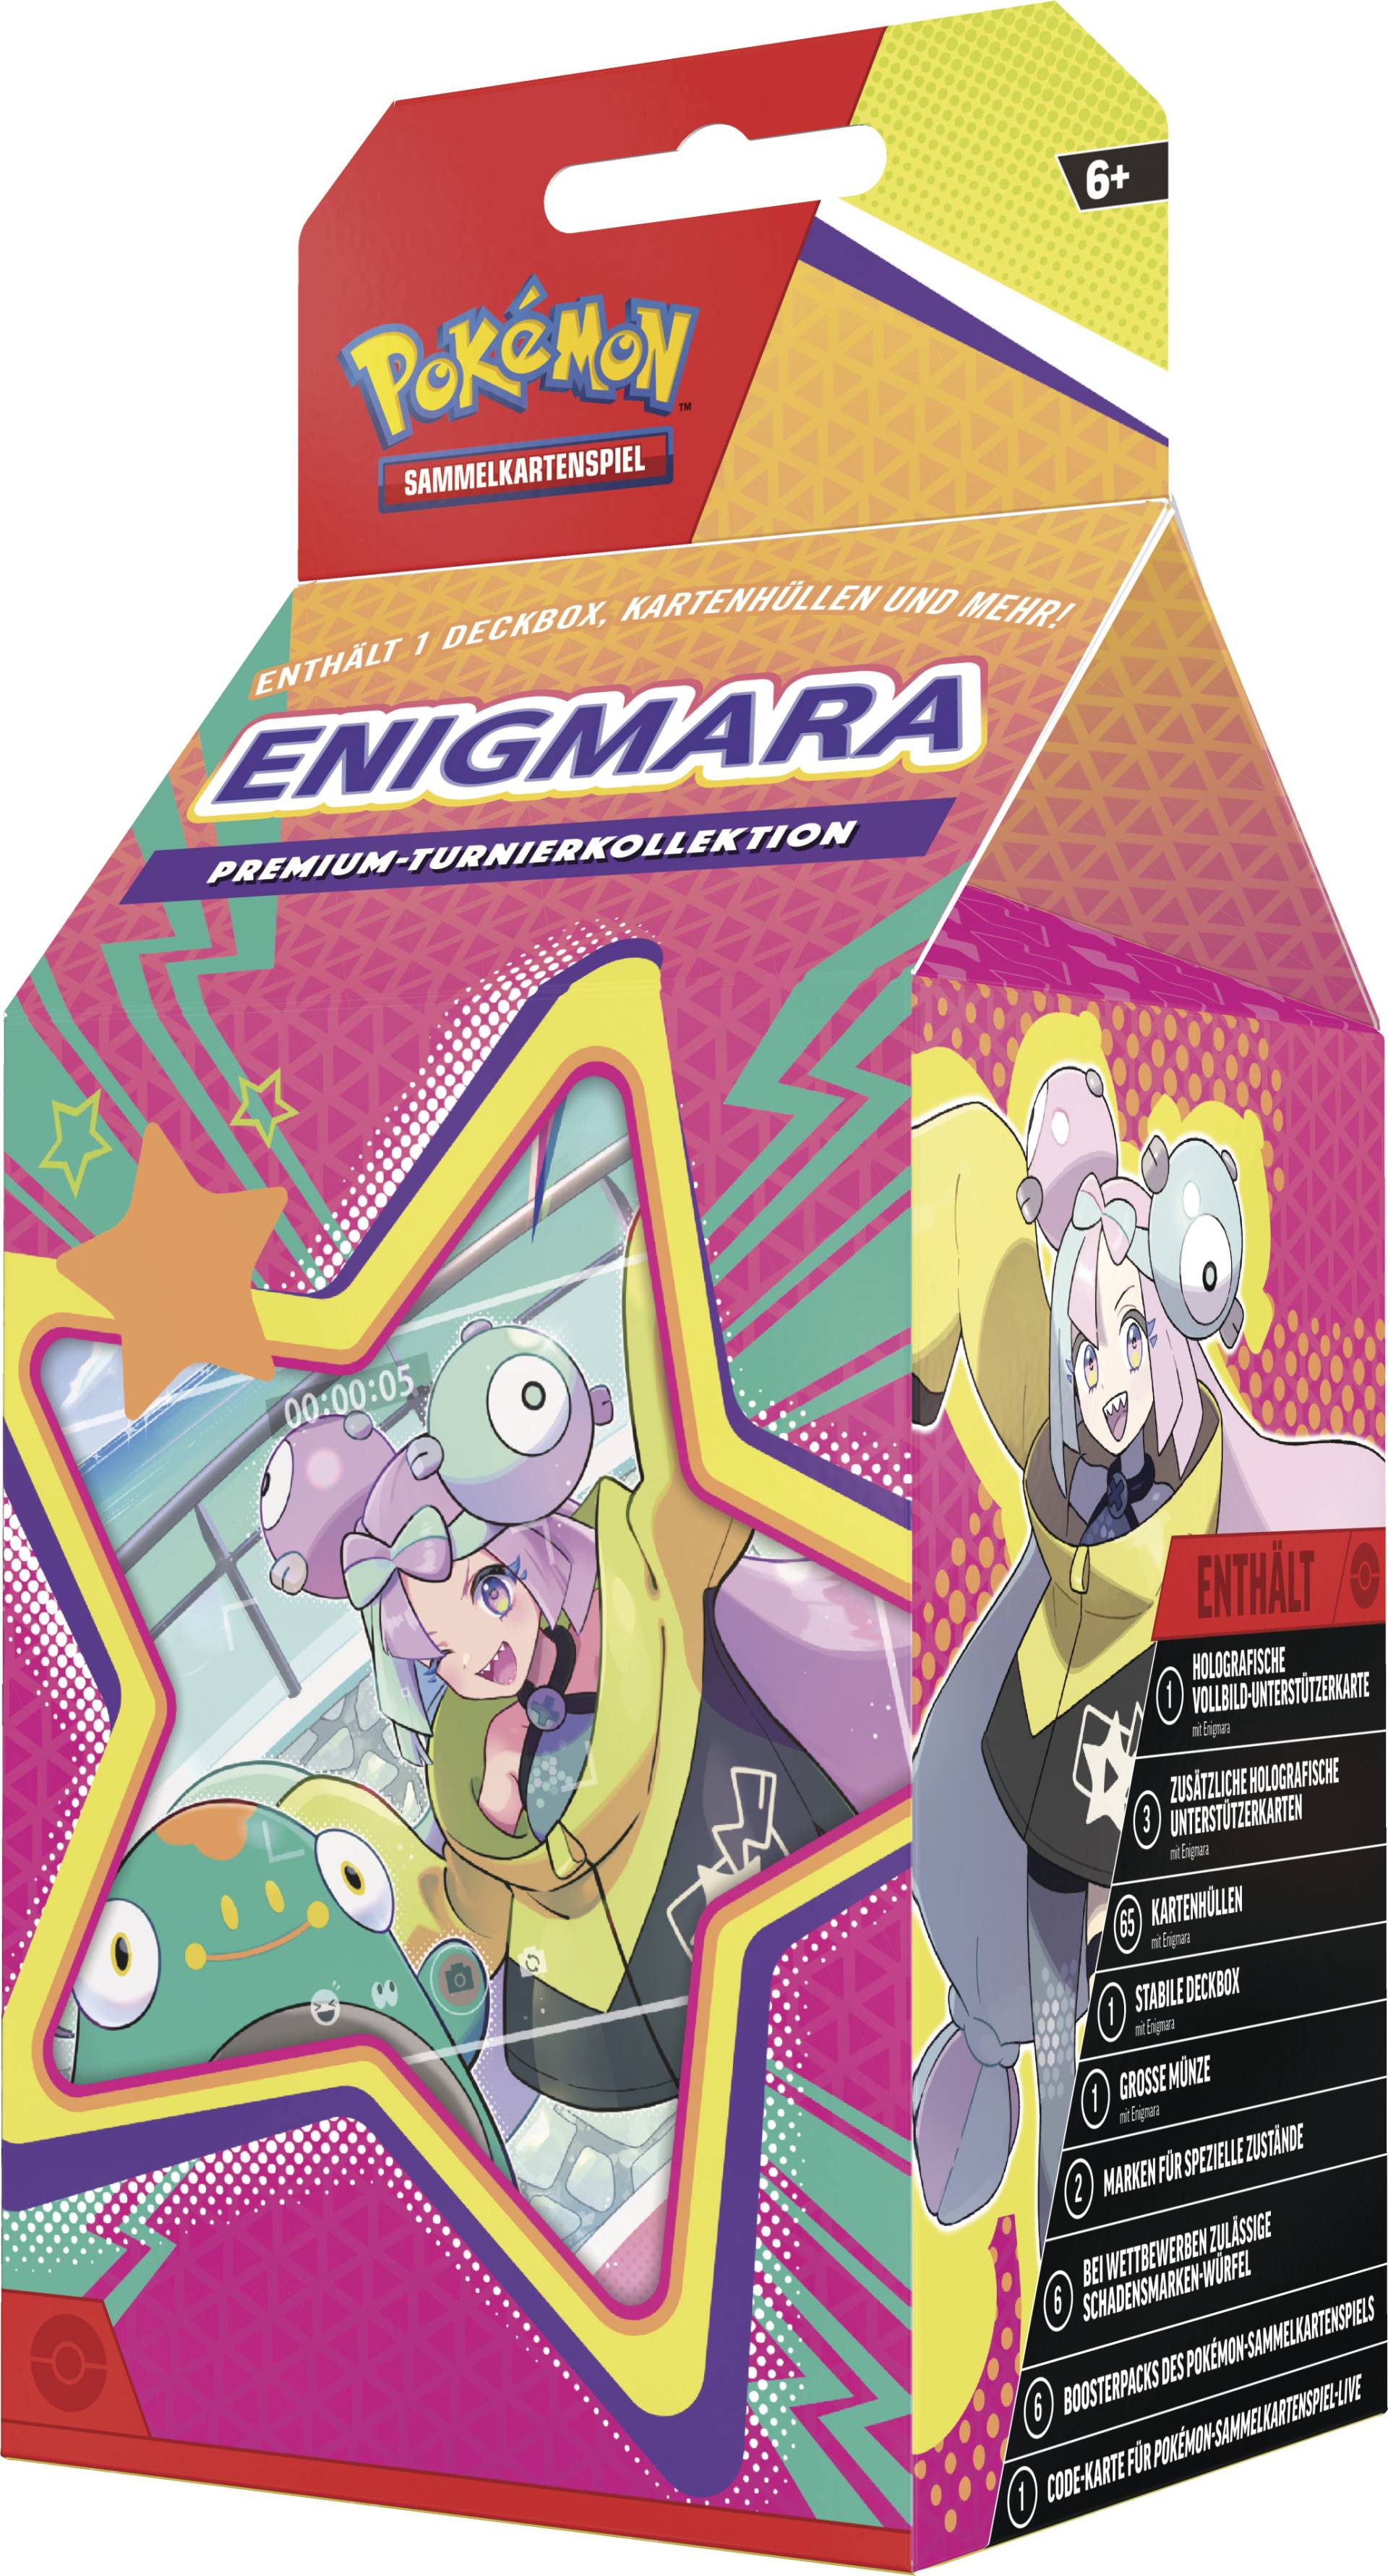 Pokemon Premium-Turnierkollektion Enigmara (1 holografische Vollbildkarte, 3 holografische Karten & 6 Boosterpacks) von The Pokemon Company